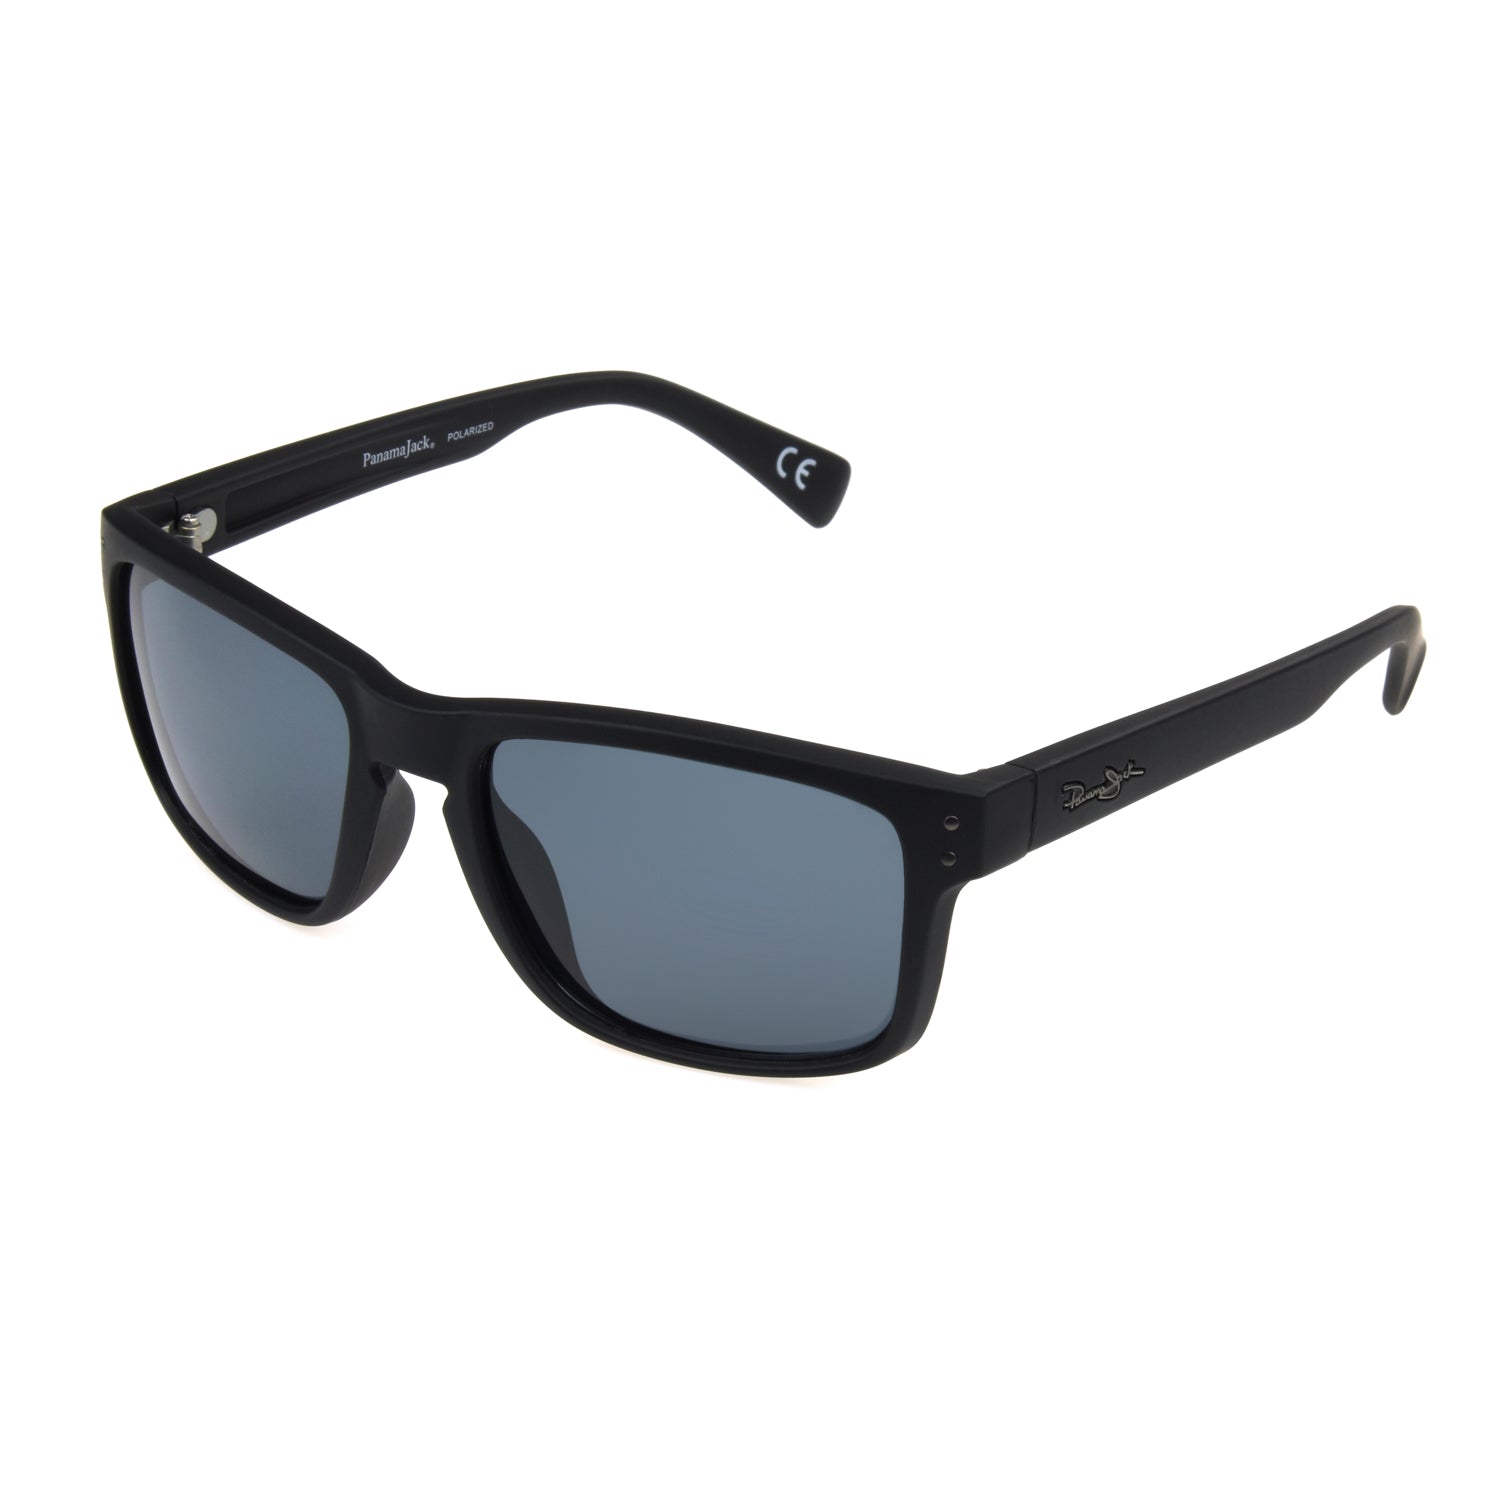 Panama Jack Men's Polarized Black & White Square Sunglasses, 60